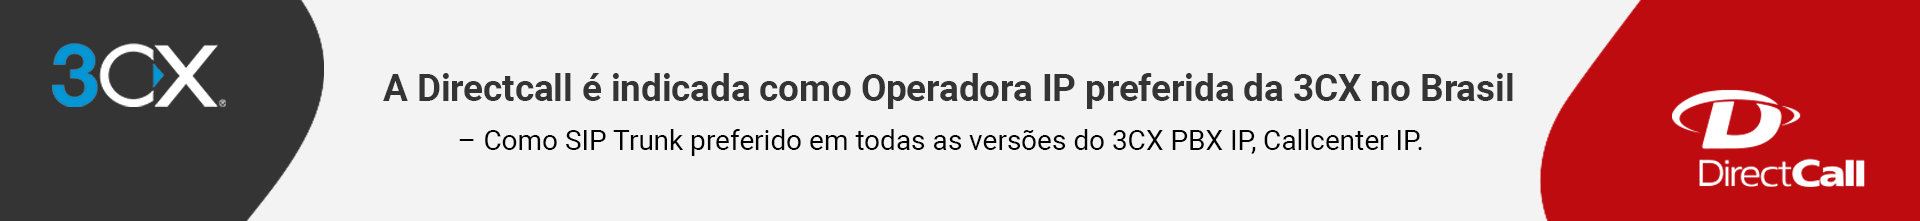 A Directcall é indicada como Operadora IP preferida da 3CX no Brasil